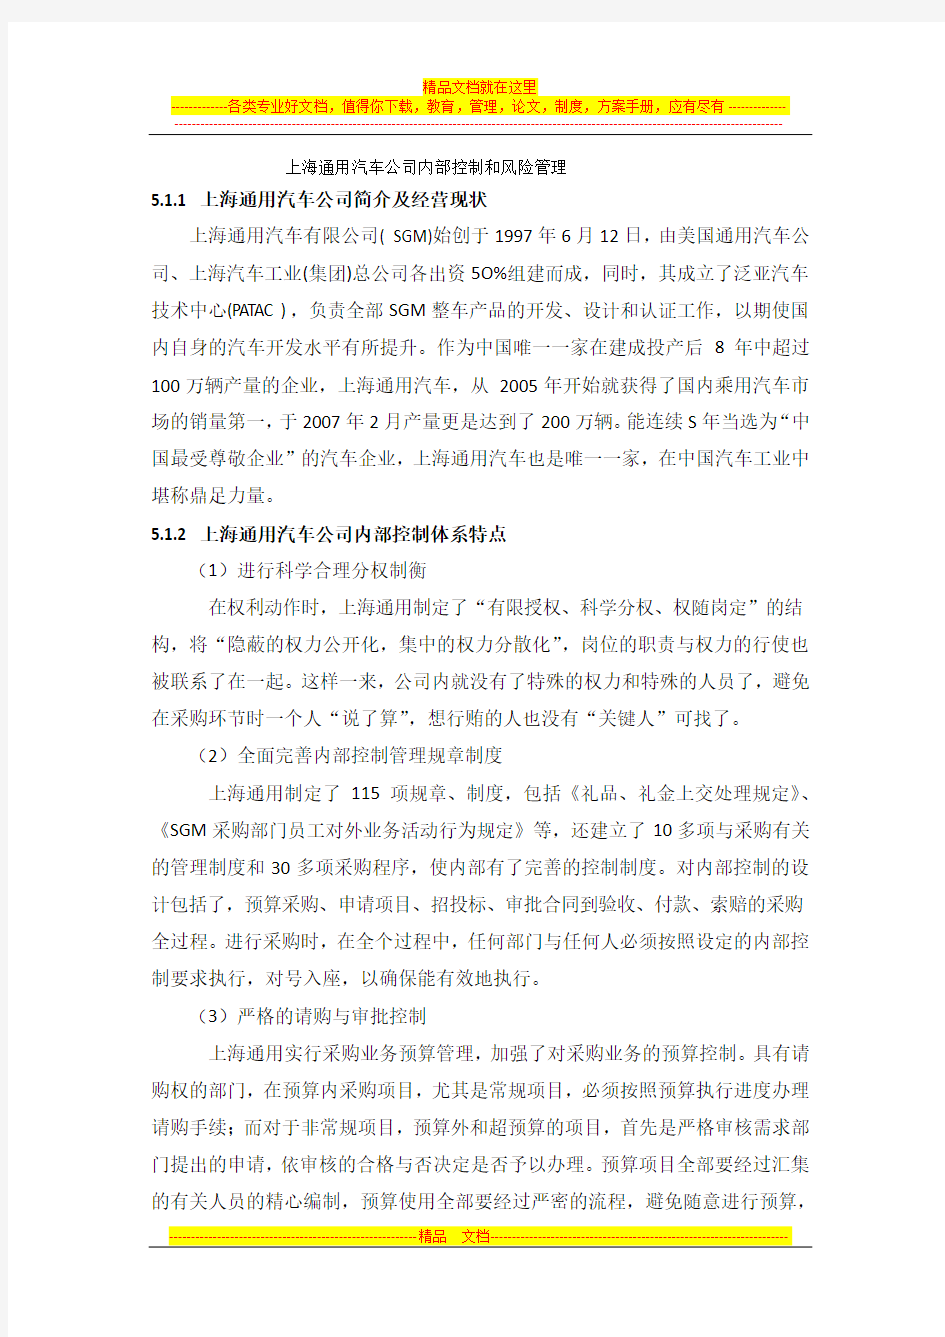 上海通用汽车公司内部控制和风险管理 中文1